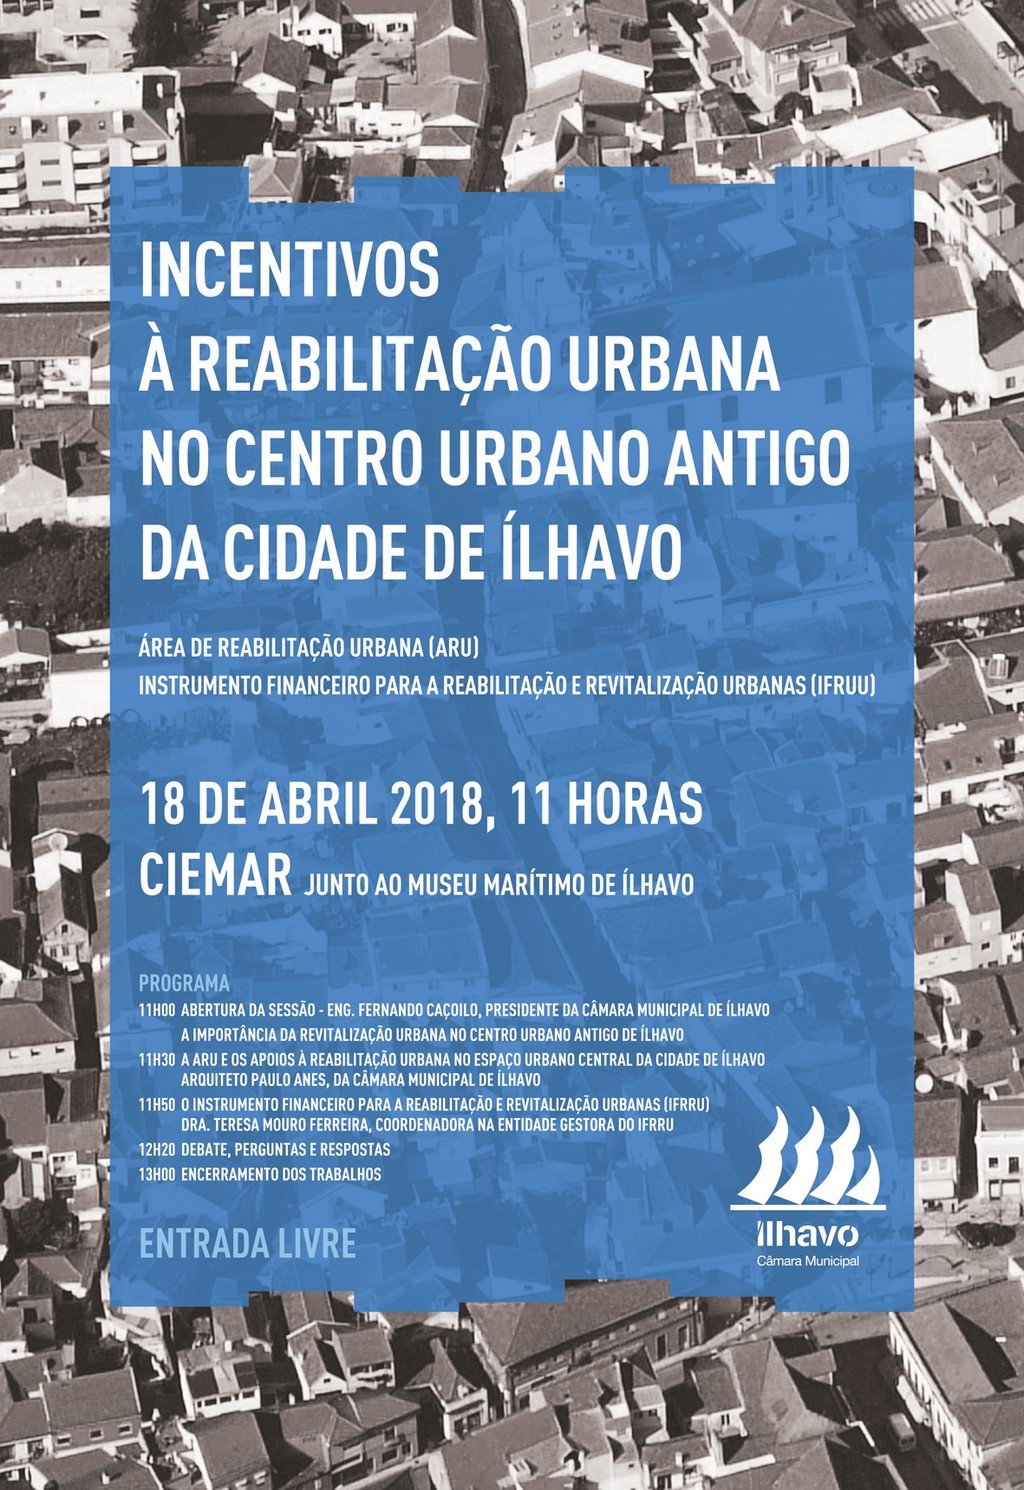 Incentivos à Reabilitação Urbana no Centro Urbano Antigo da Cidade de Ílhavo